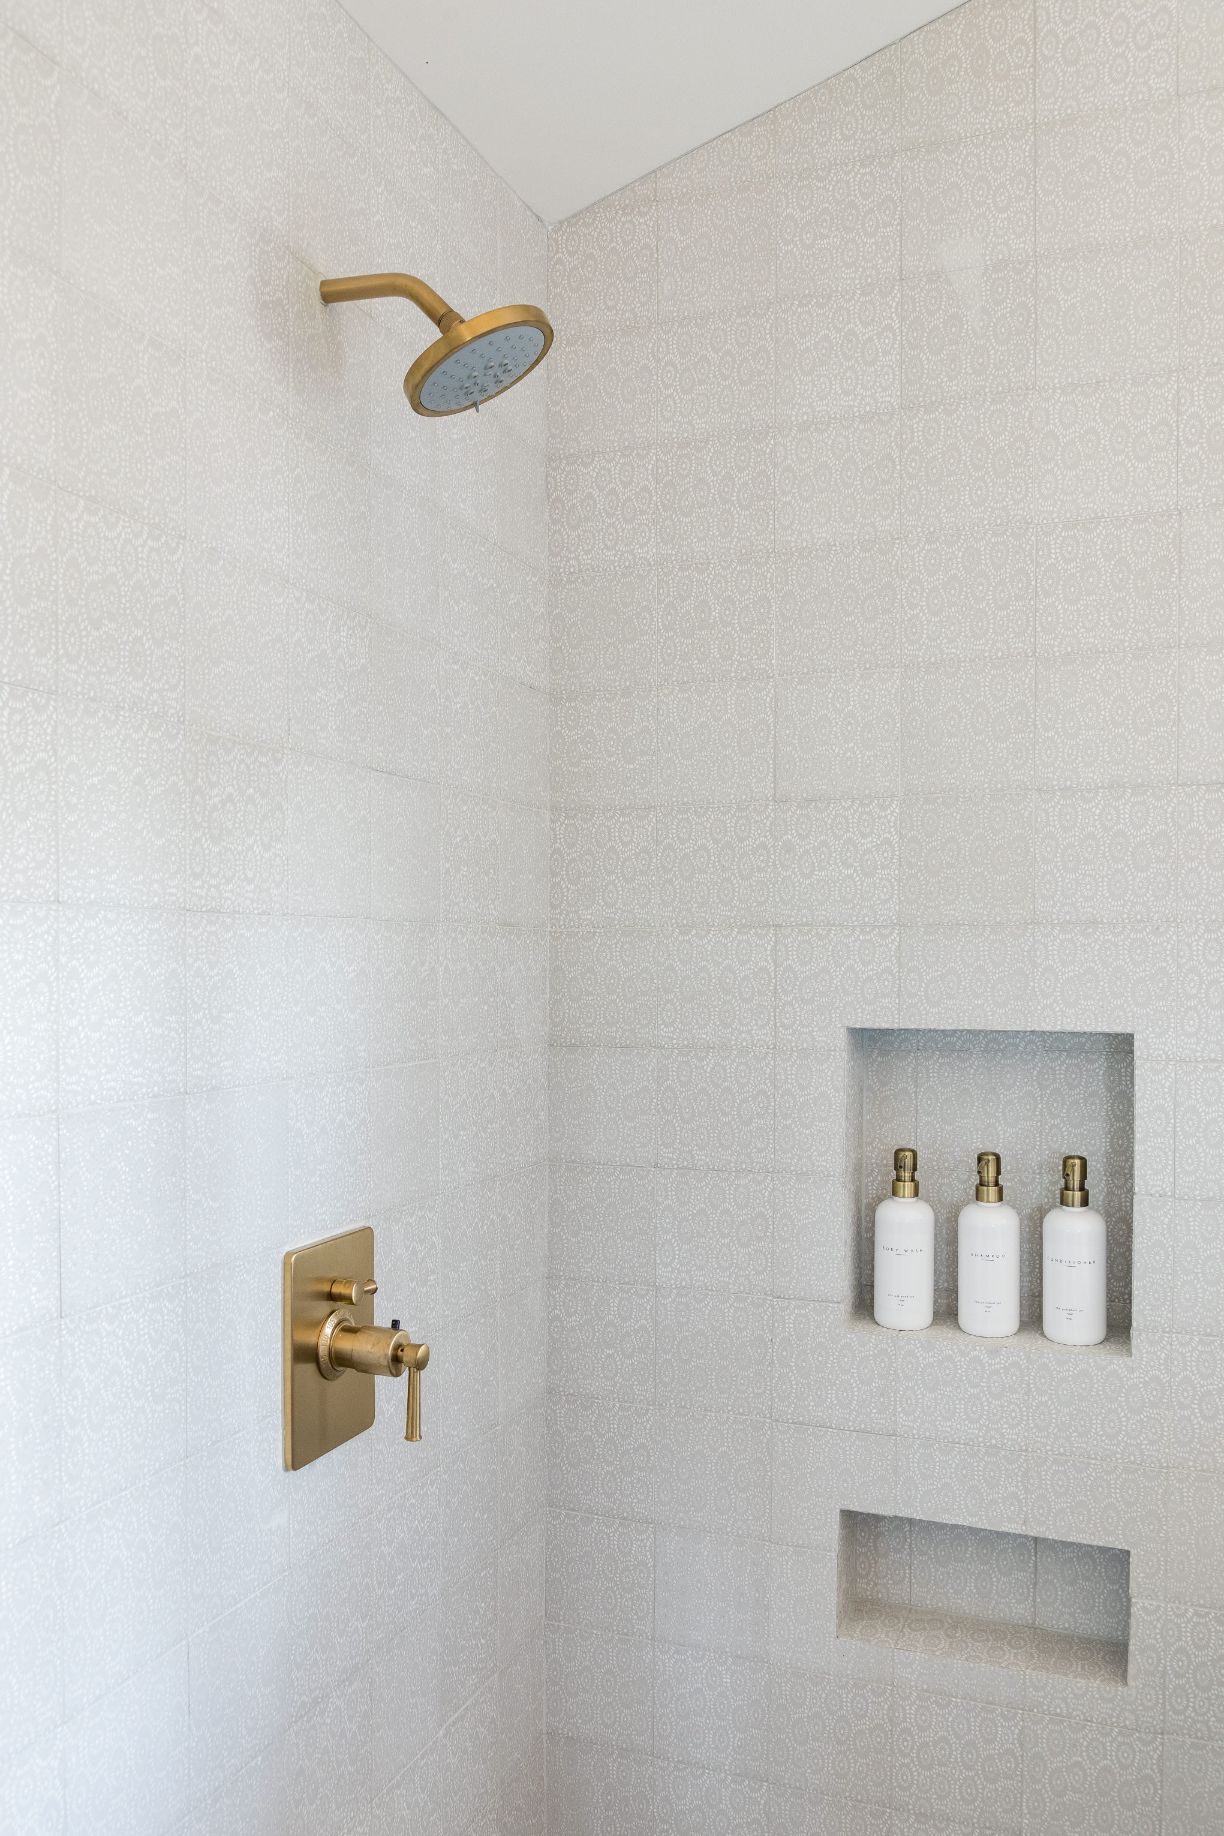 upscale shower fixtures in bathroom design